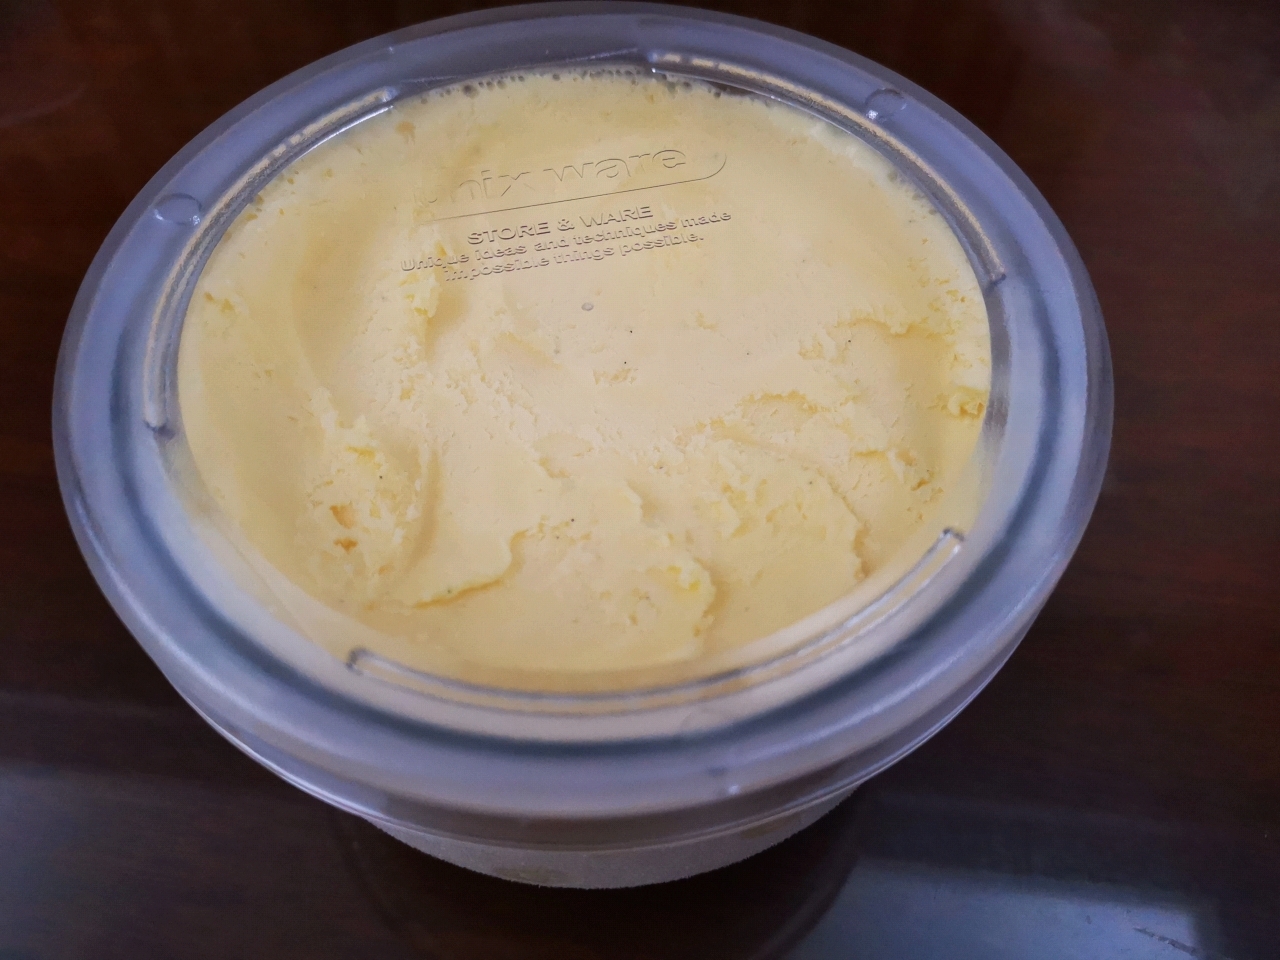 【小高姐】香草冰淇淋 手工制作的经典冰淇淋